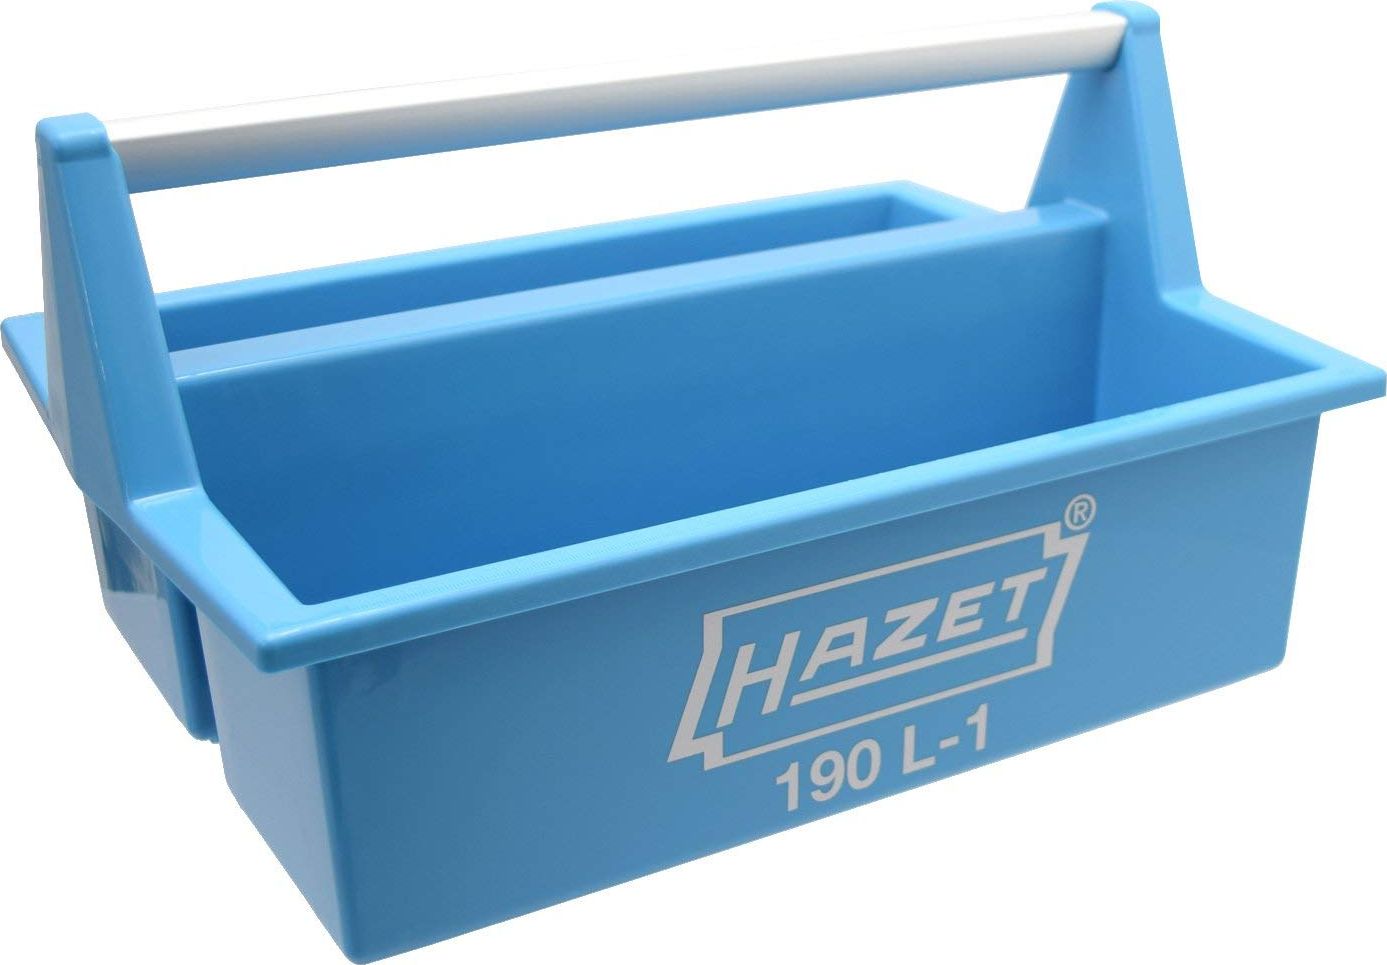 Hazet Plastic Carrying Case 190L-1